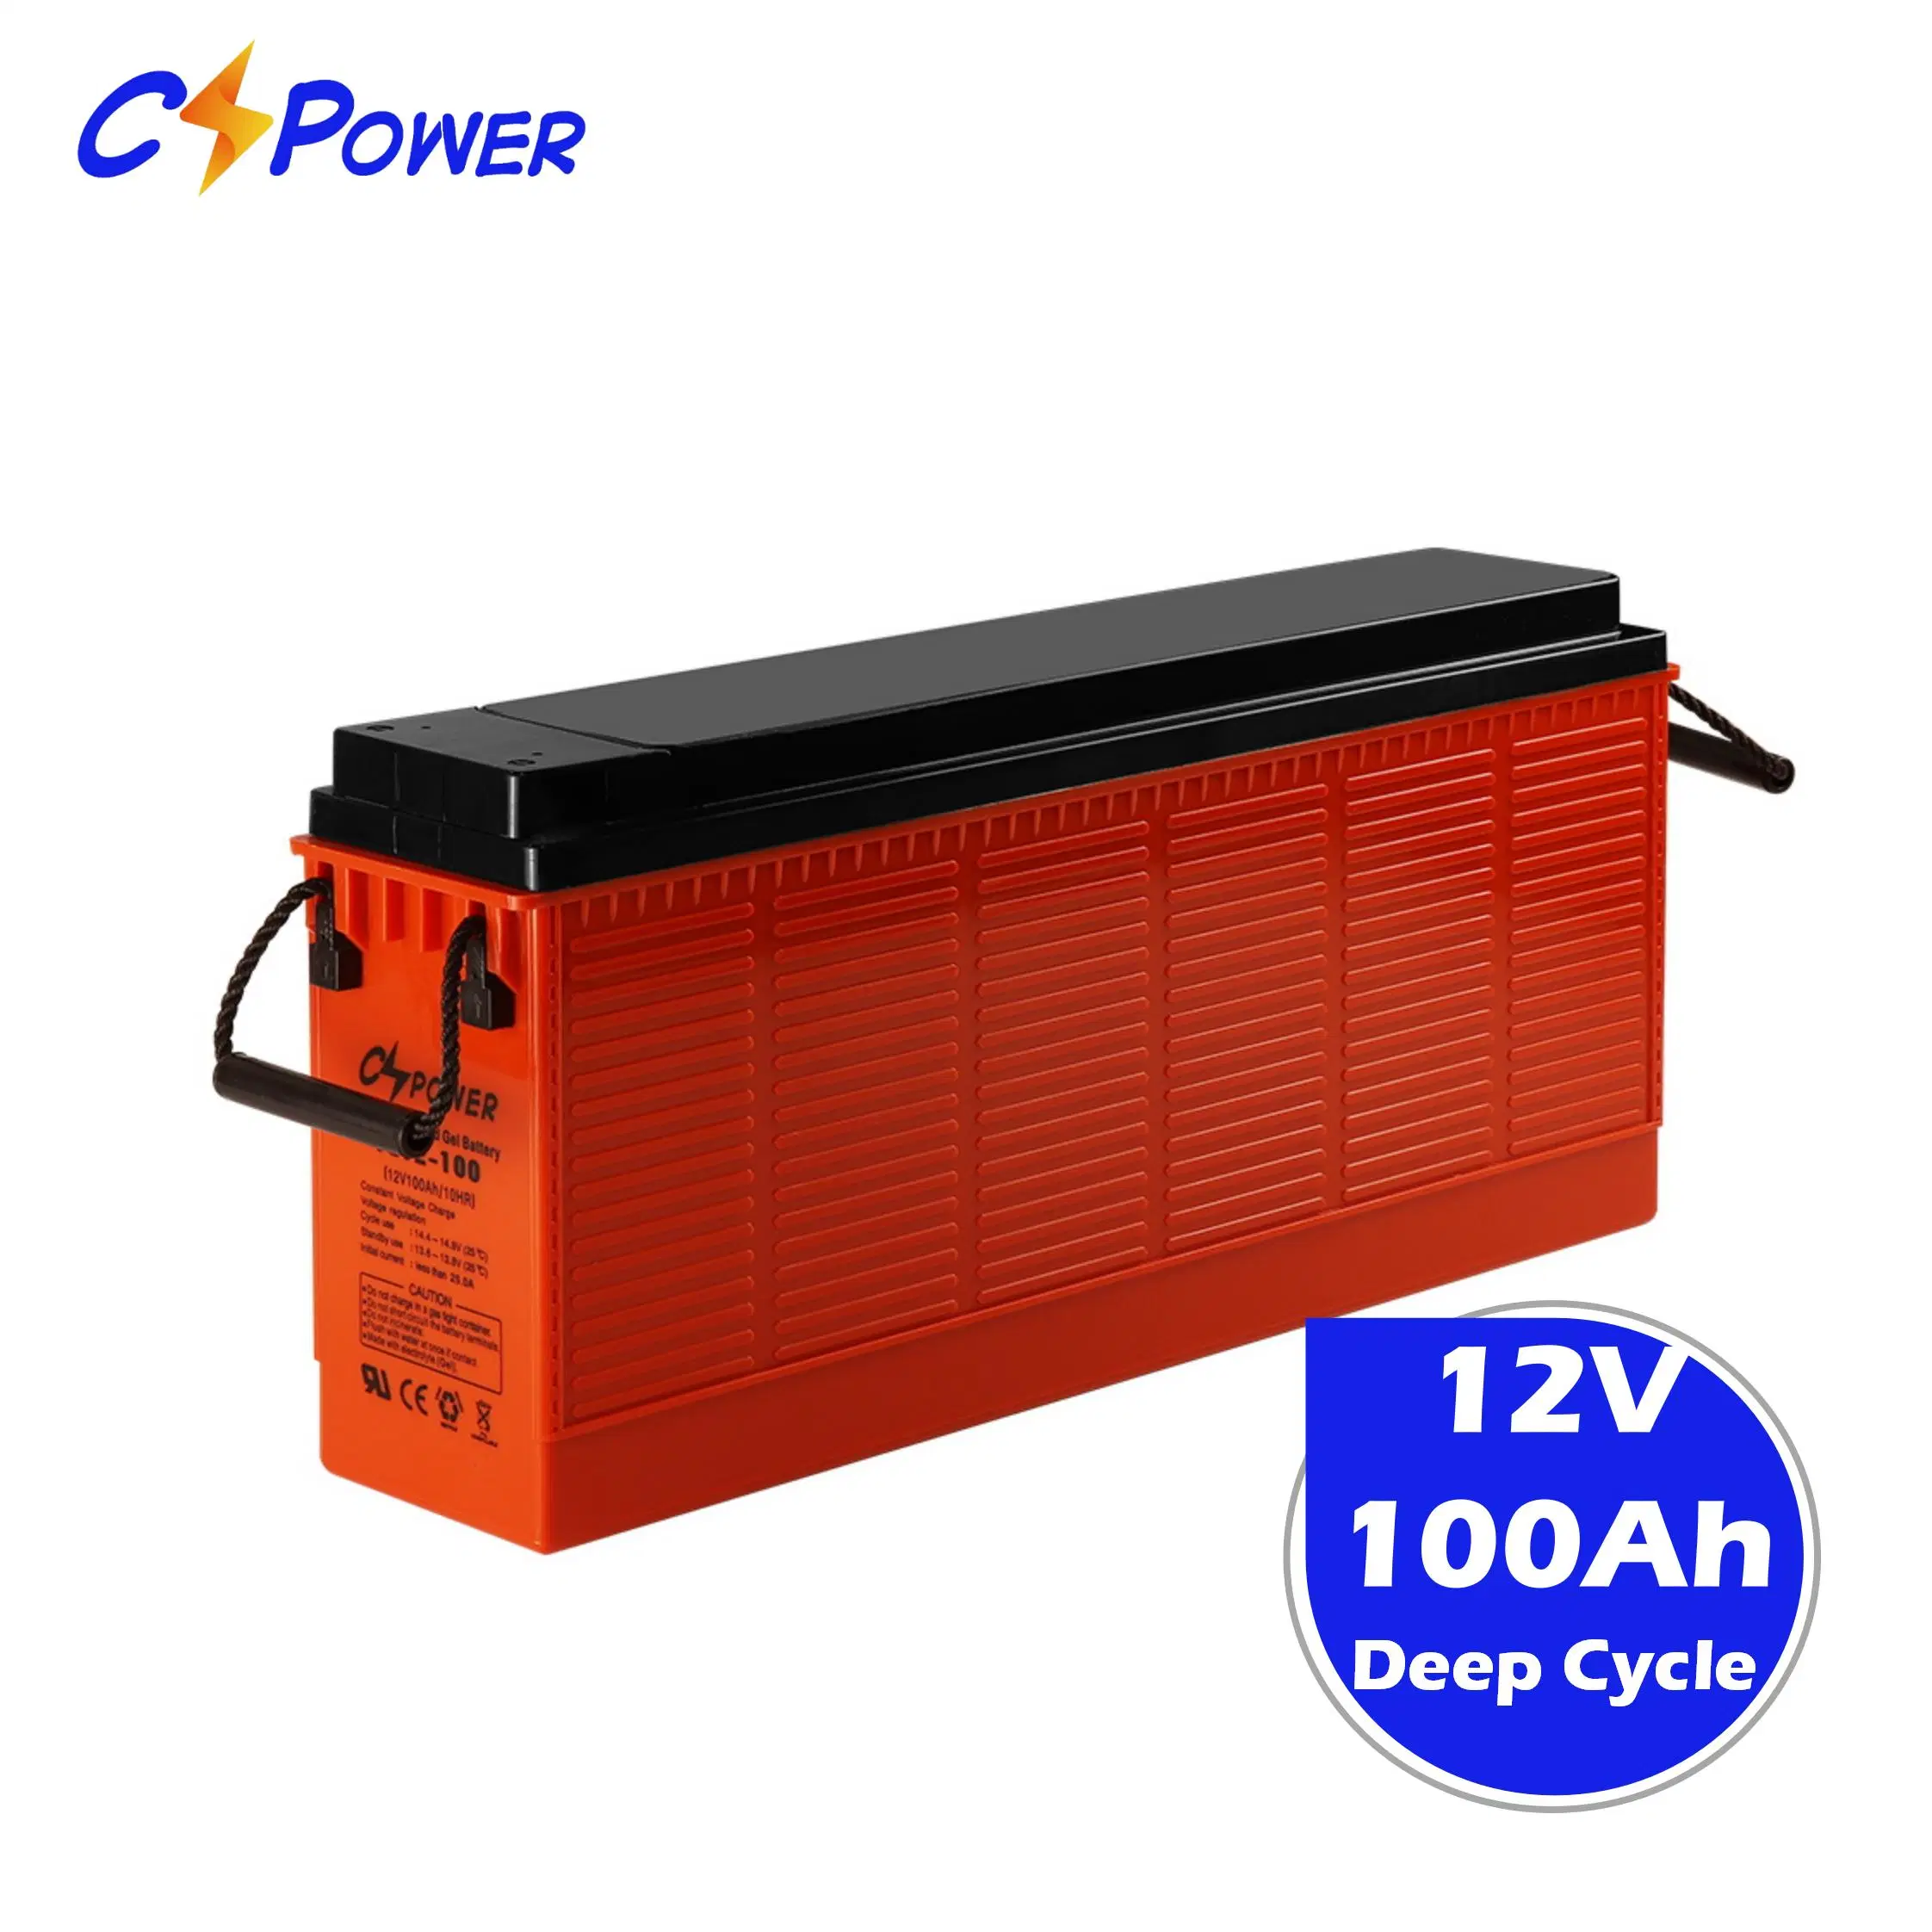 Batería de Cspower Terminal frontal batería de gel recargable Slim FL12-100ah/12V-100ah-batería/Telecom-batería/Inverter-Panel-batería/Solar-batería-12V/CSI